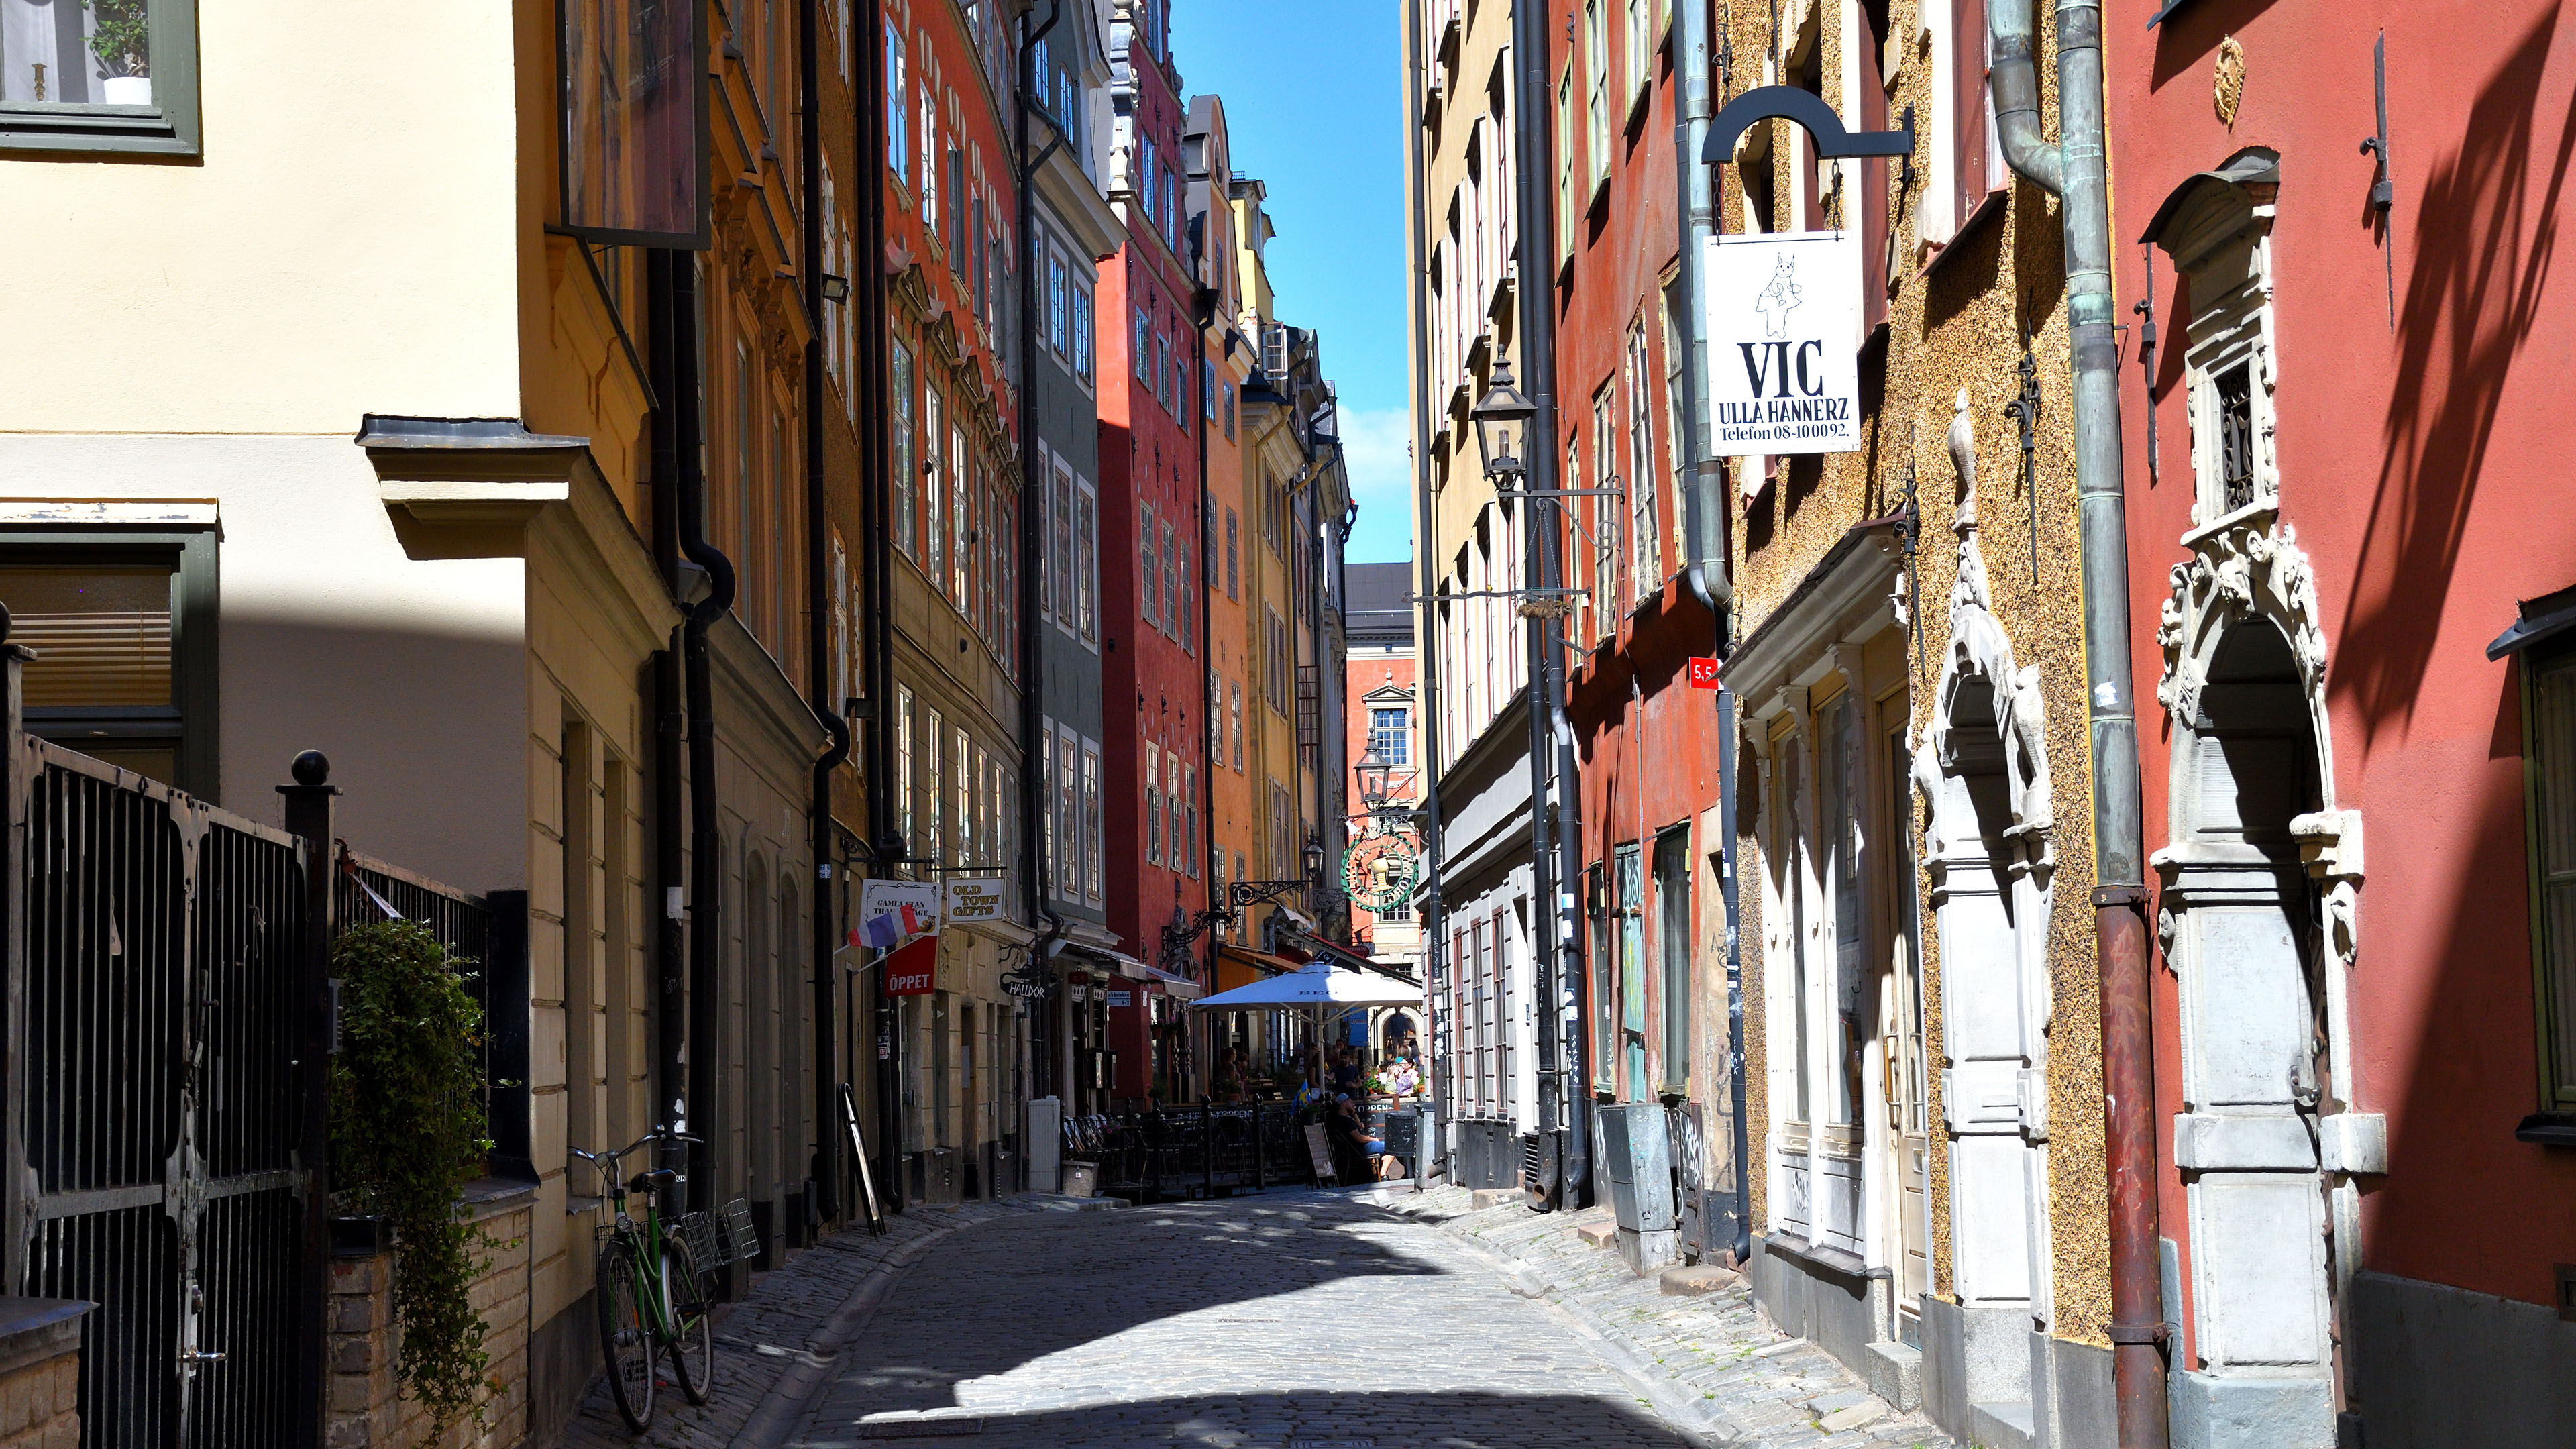 Narrow alleyways in Old Town